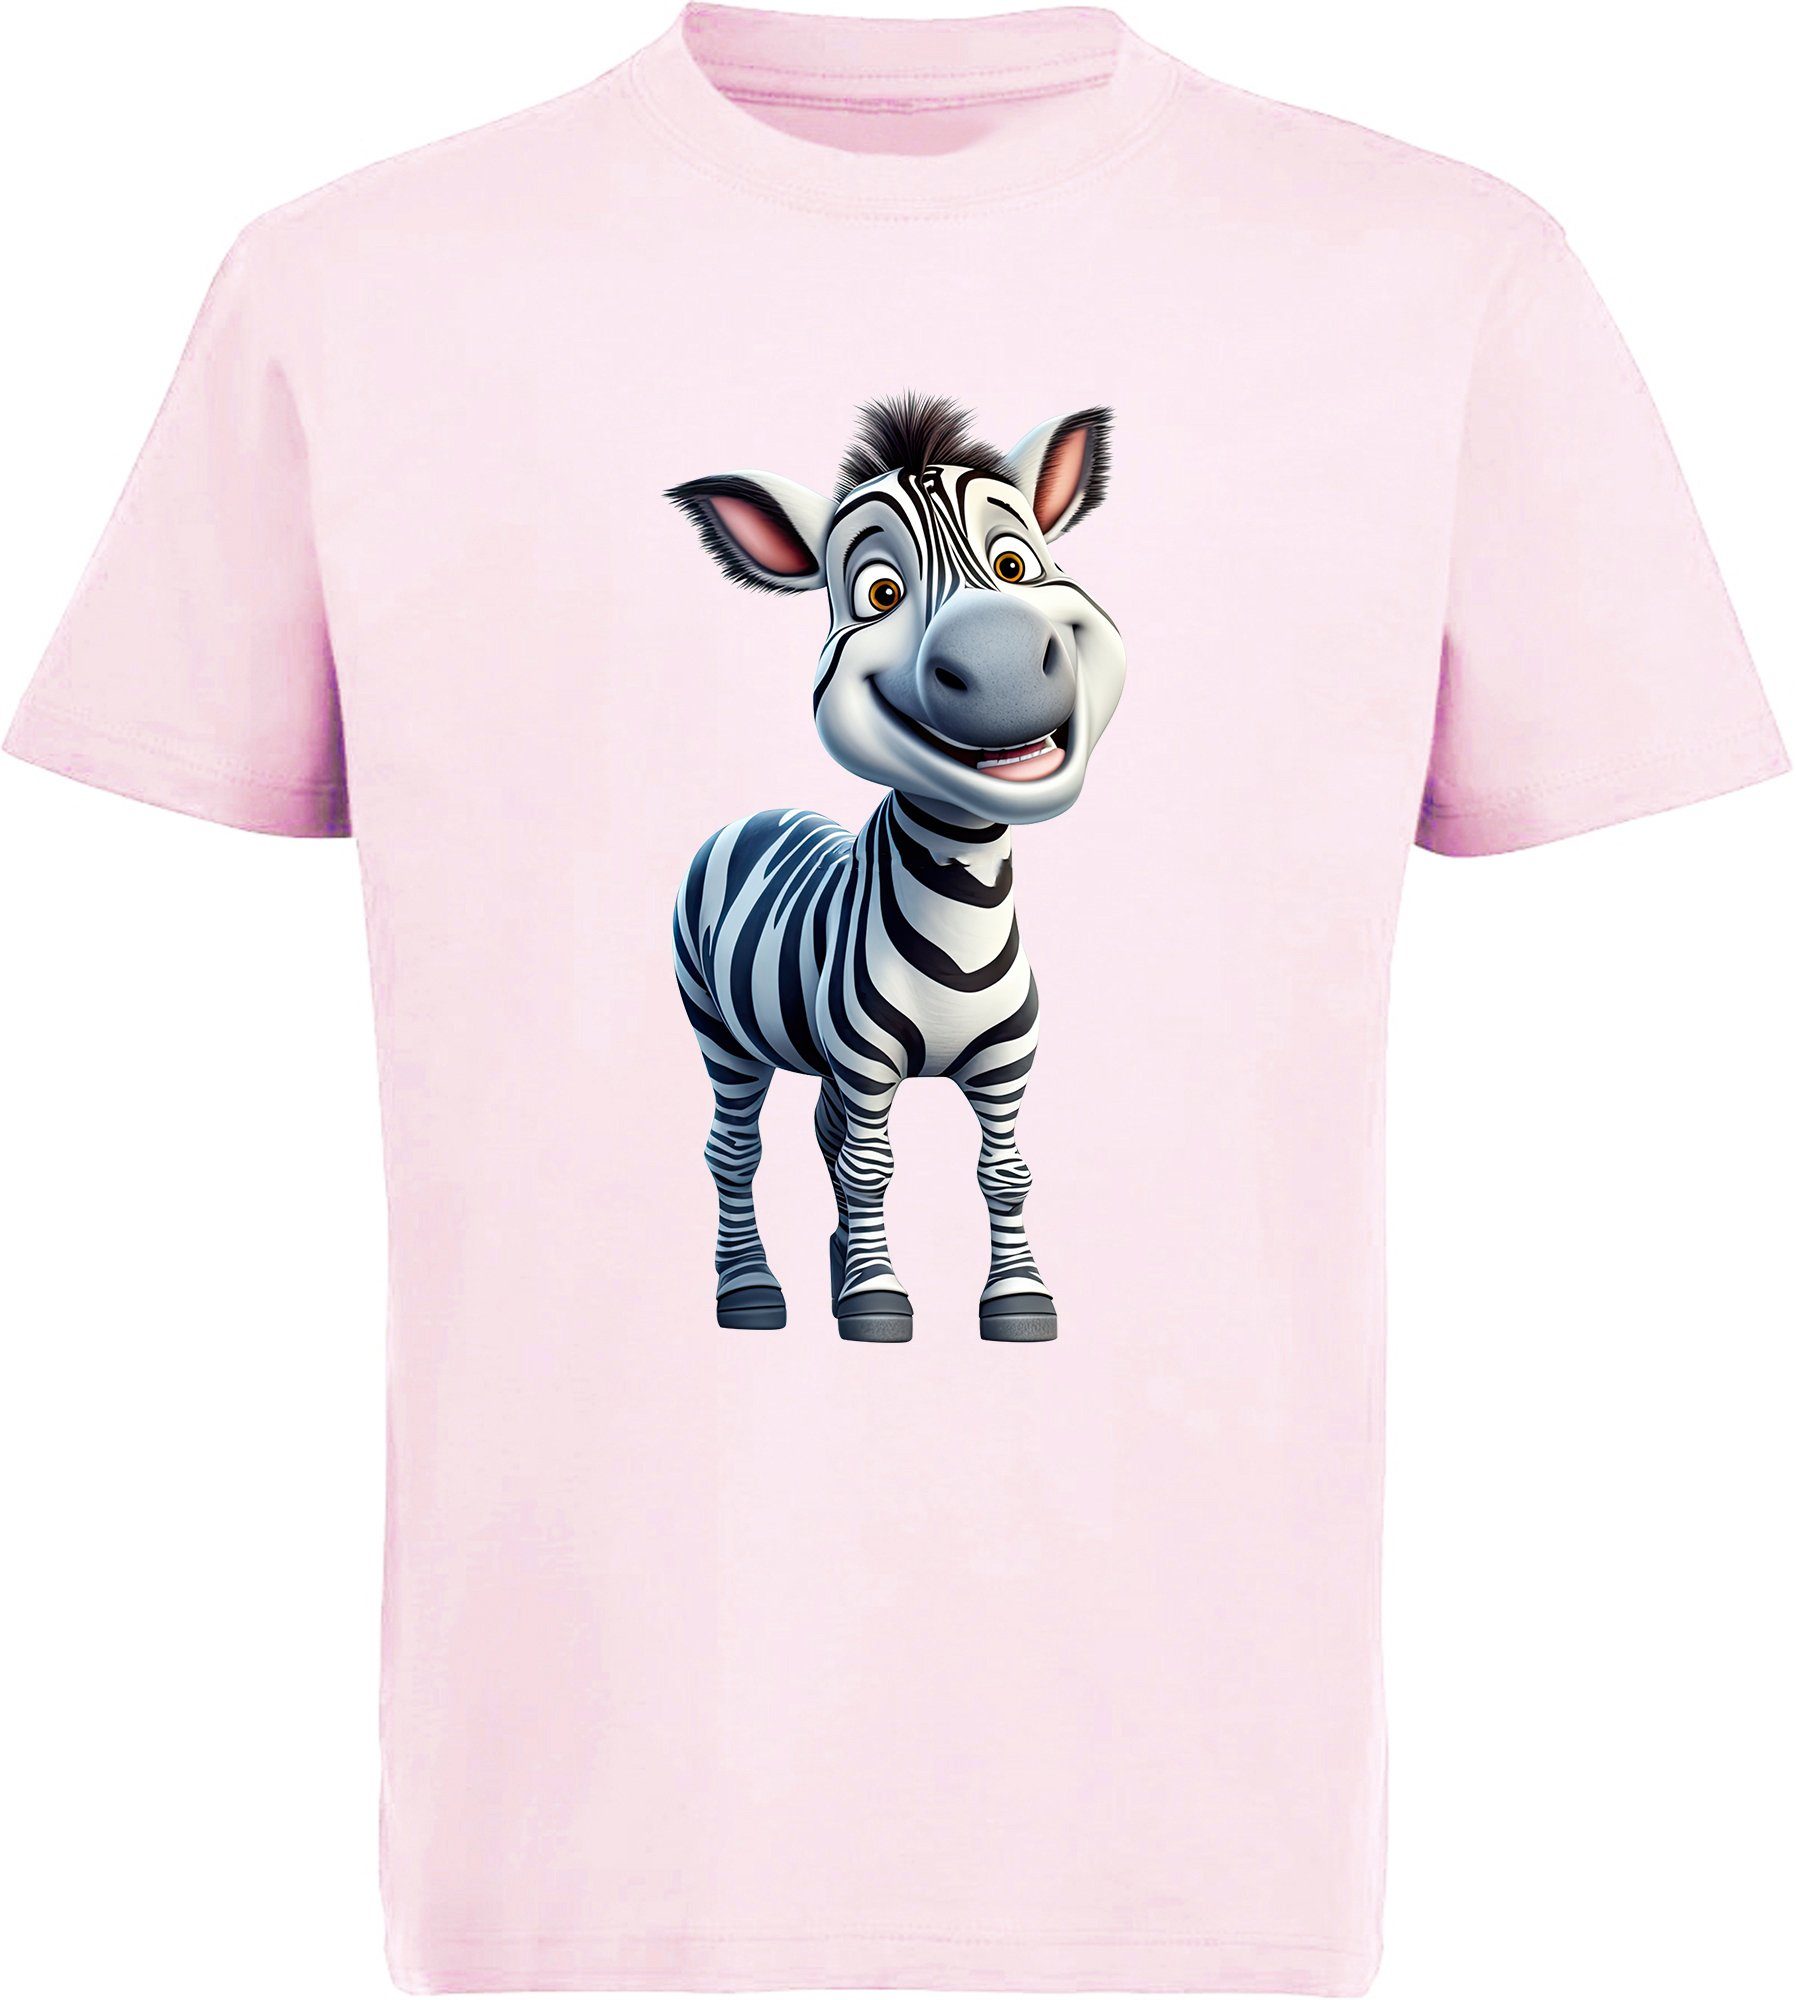 MyDesign24 T-Shirt Kinder Wildtier Print bedruckt Zebra rosa mit Aufdruck, Baumwollshirt - Baby Shirt i280